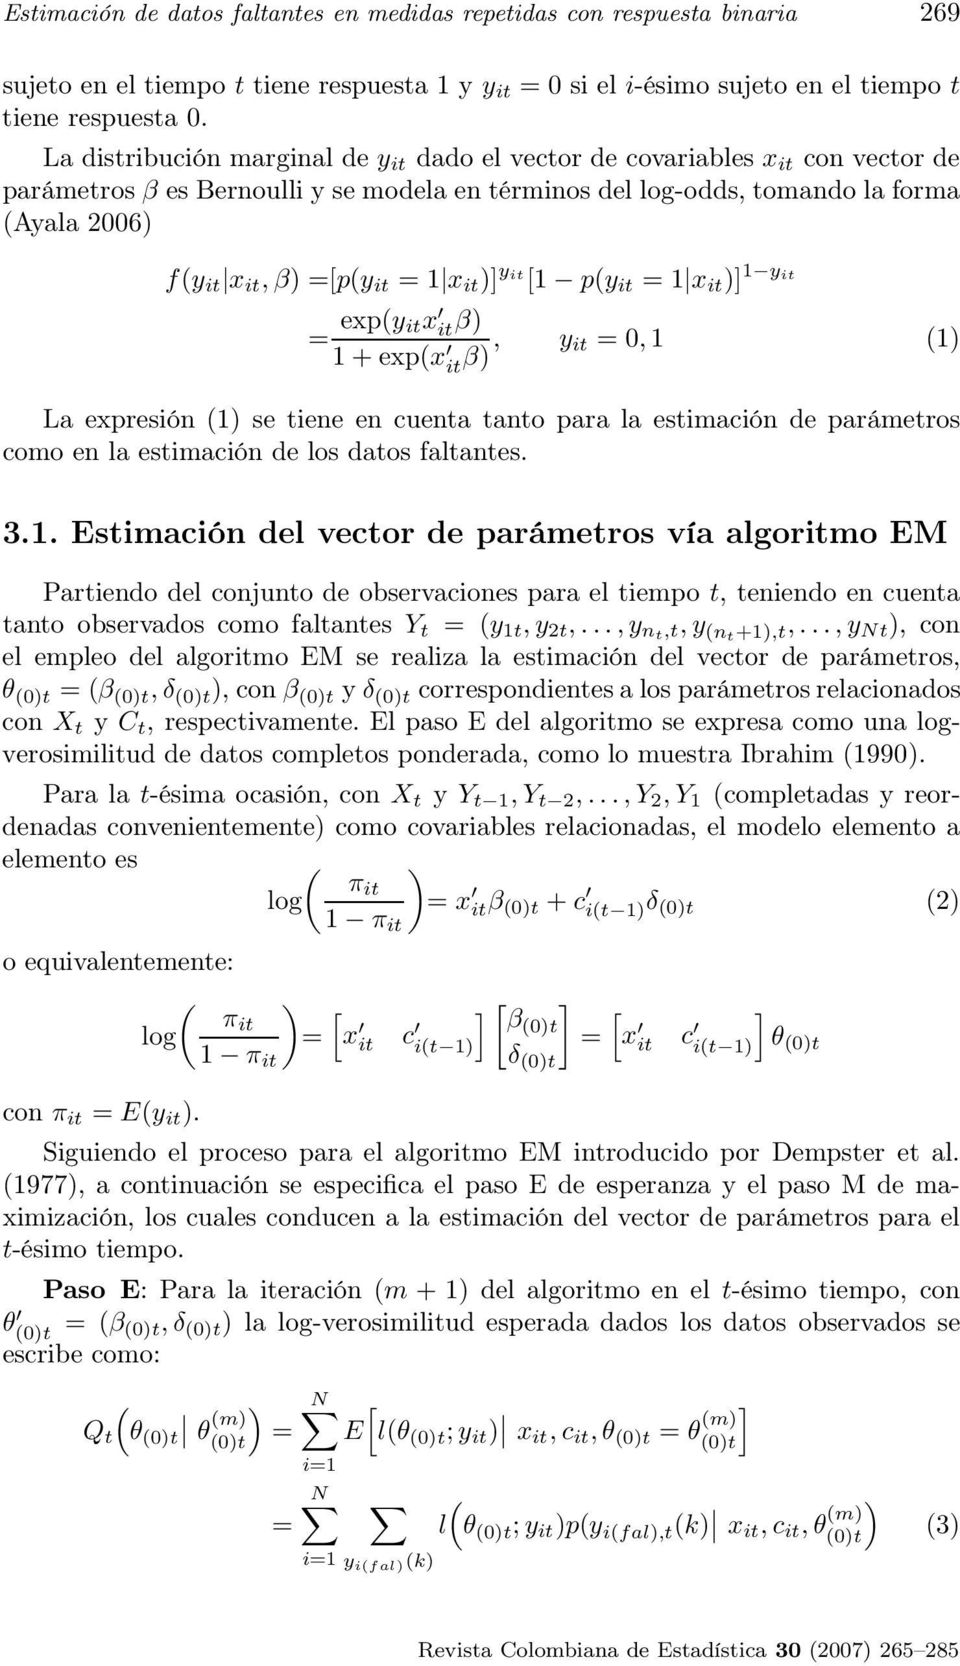 1 x it )] yit 1 py it = 1 x it )] 1 yit = expy itx it β) 1 + expx it β), y it = 0, 1 1) La expresión 1) se tiene en cuenta tanto para la estimación de parámetros como en la estimación de los datos